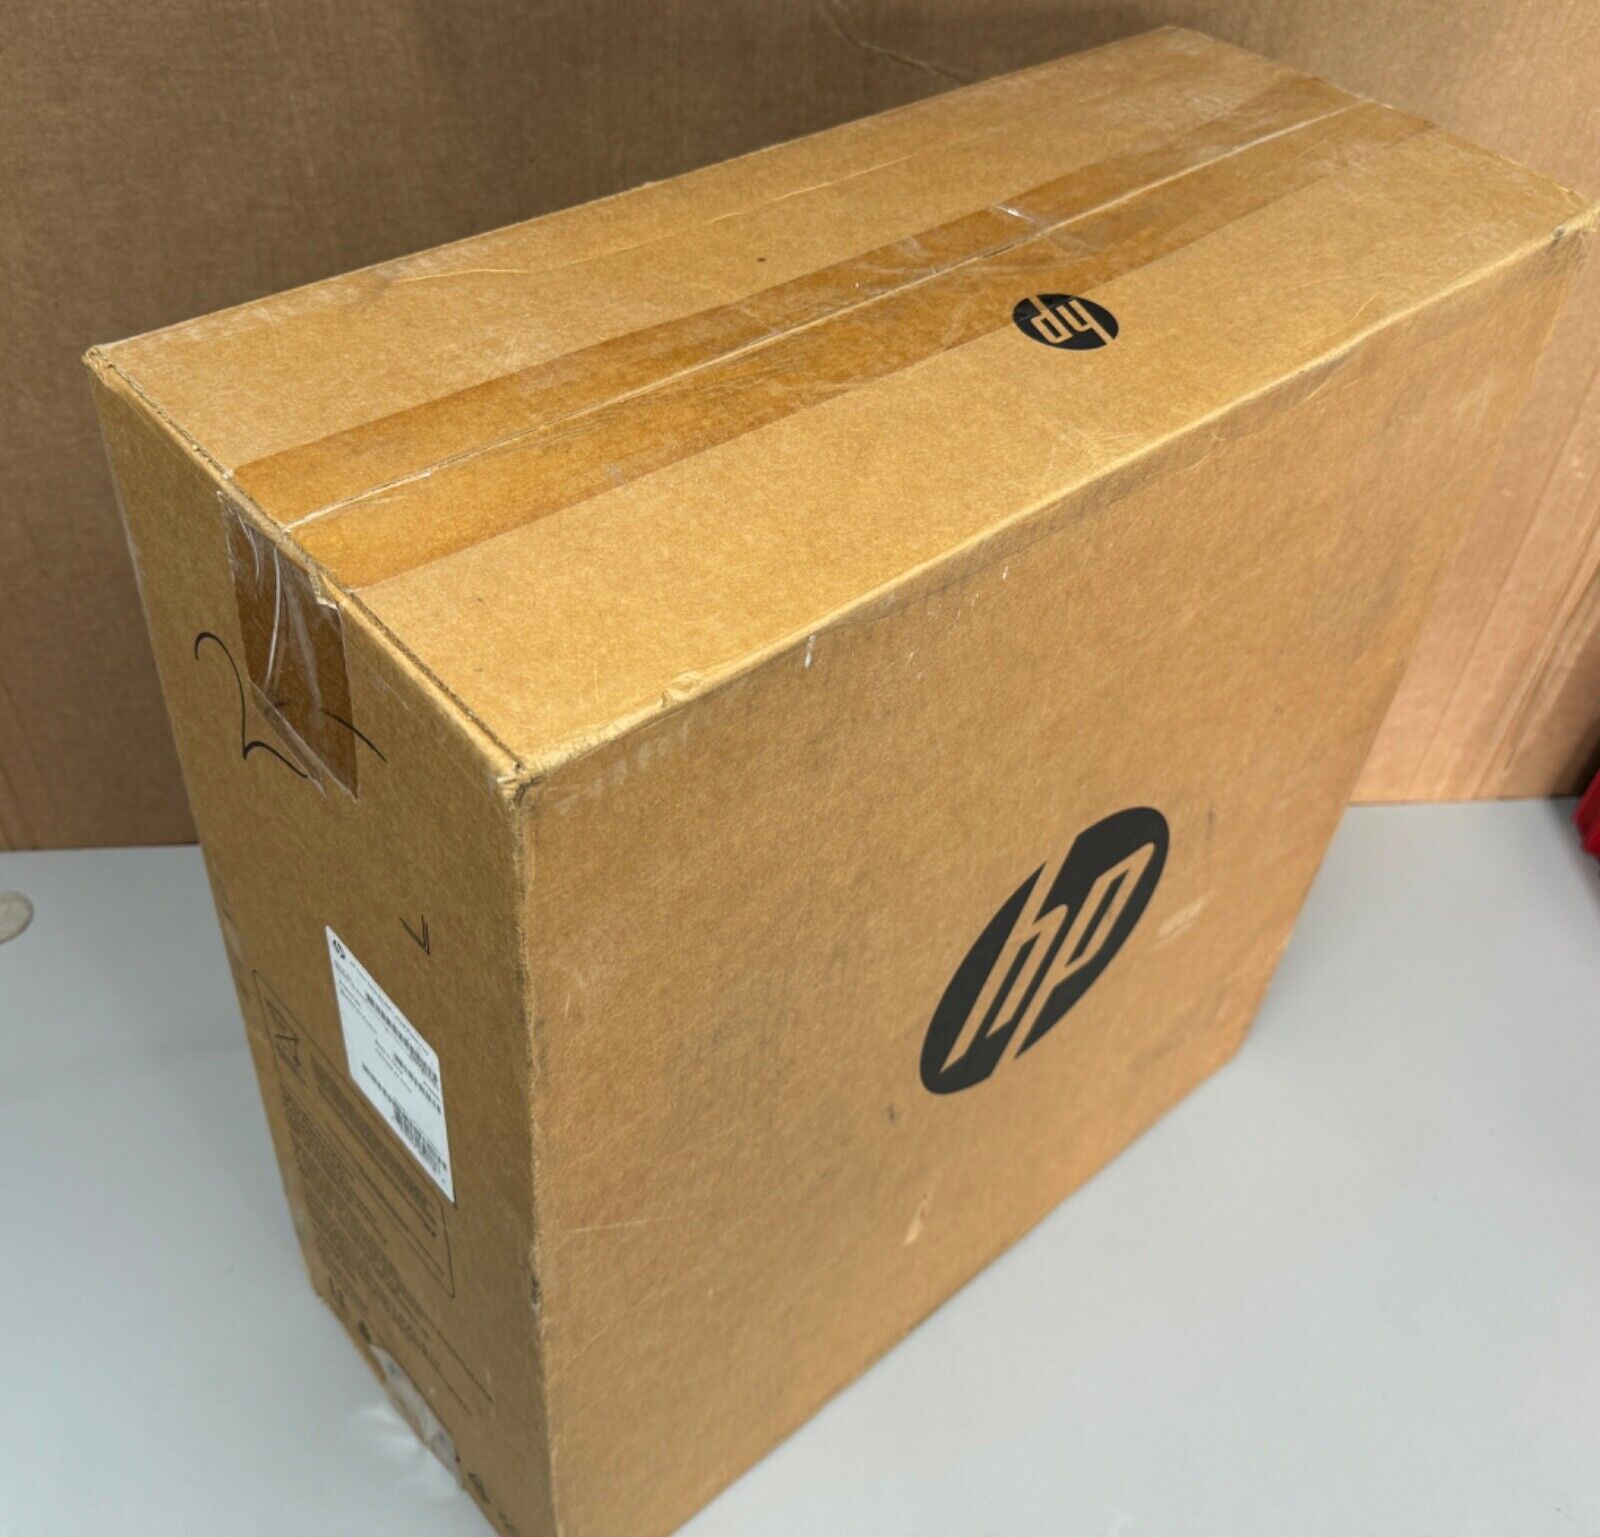 HP CF404A LaserJet 550-sheet Feeder Tray - [NEW IN BOX]